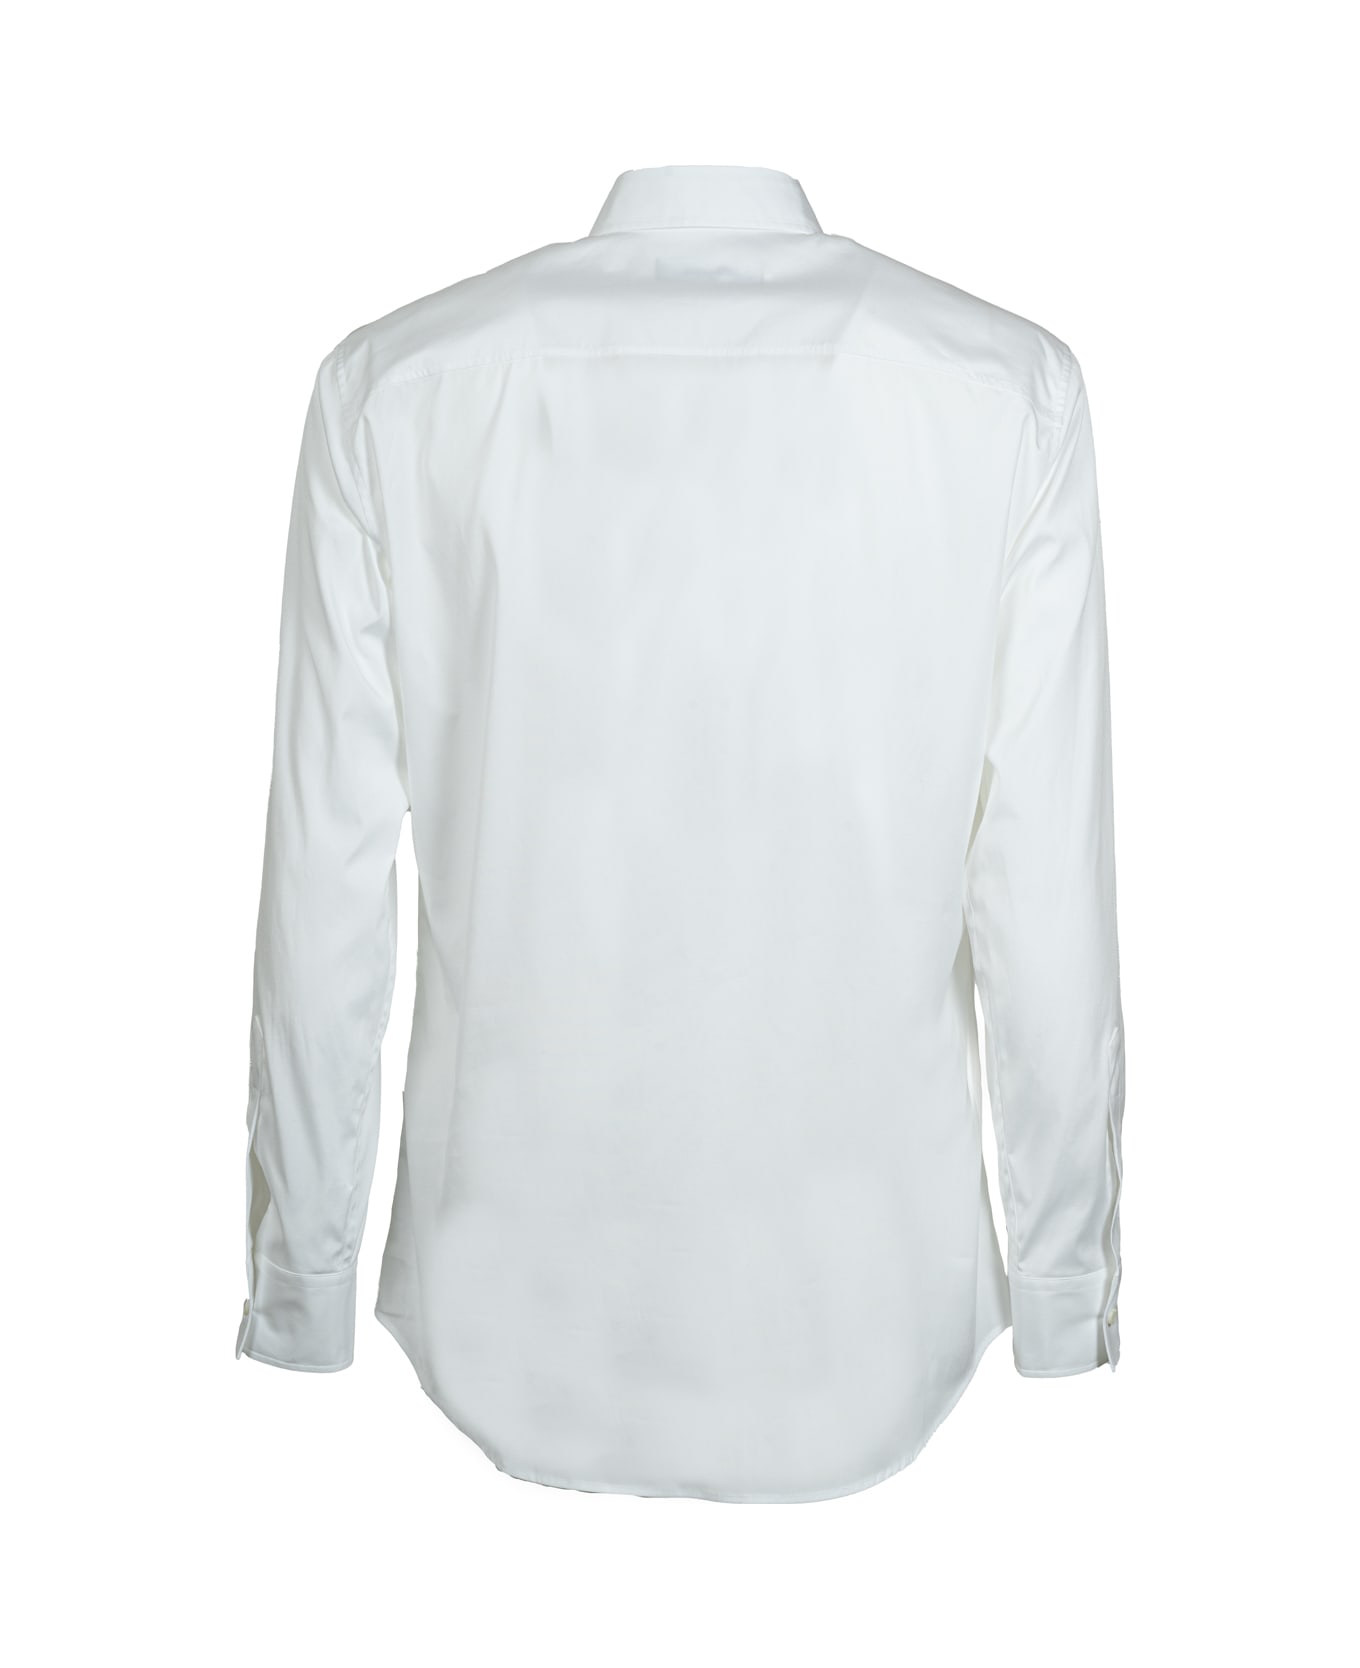 Dsquared2 Shirts White - White